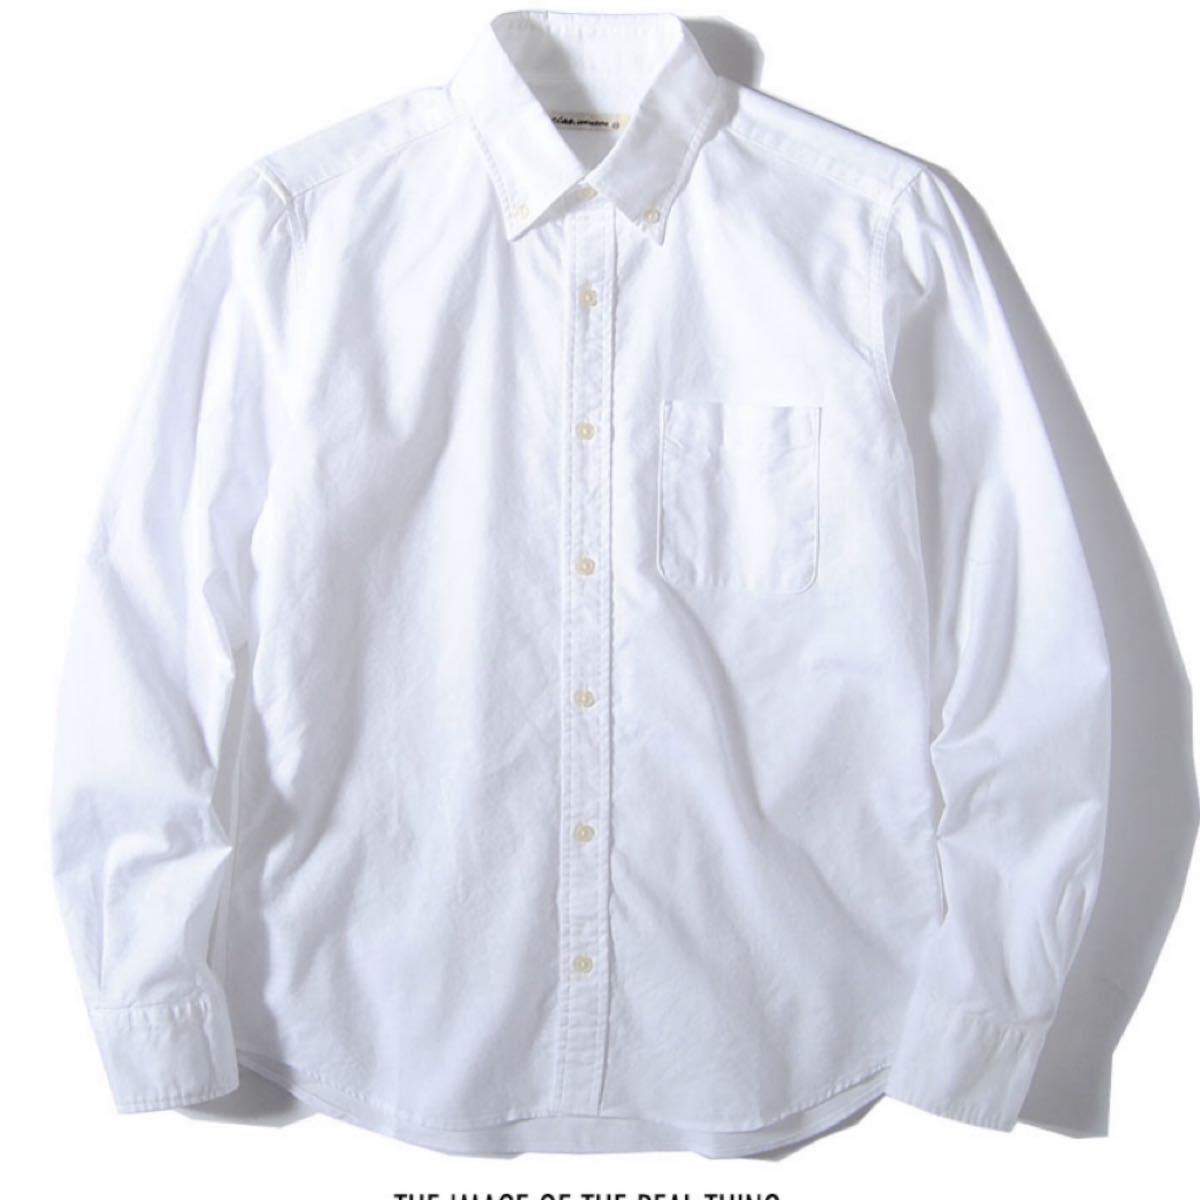 シャツ 無地 オックスフォードシャツ メンズ 国産 長袖シャツ ciaoチャオ 日本製 着丈短め 春服 春用